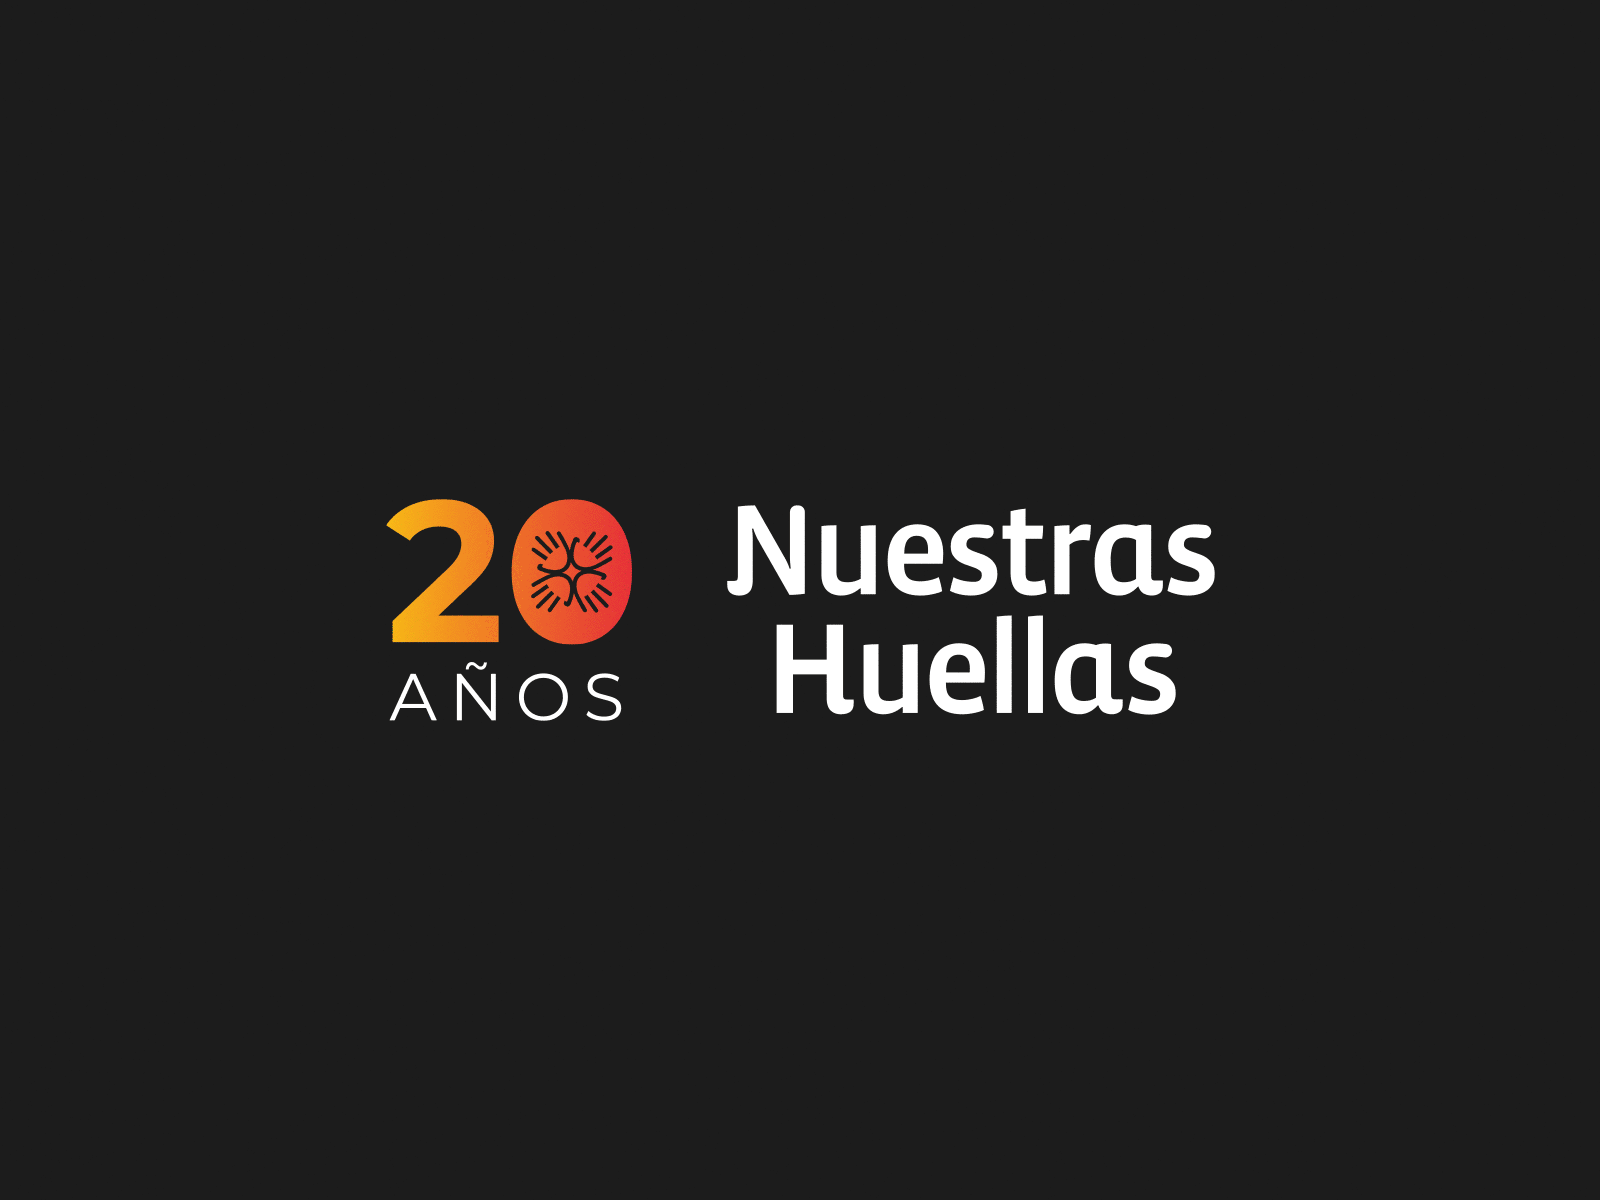 Non-profit 20 years anniversary logo - Nuestras Huellas